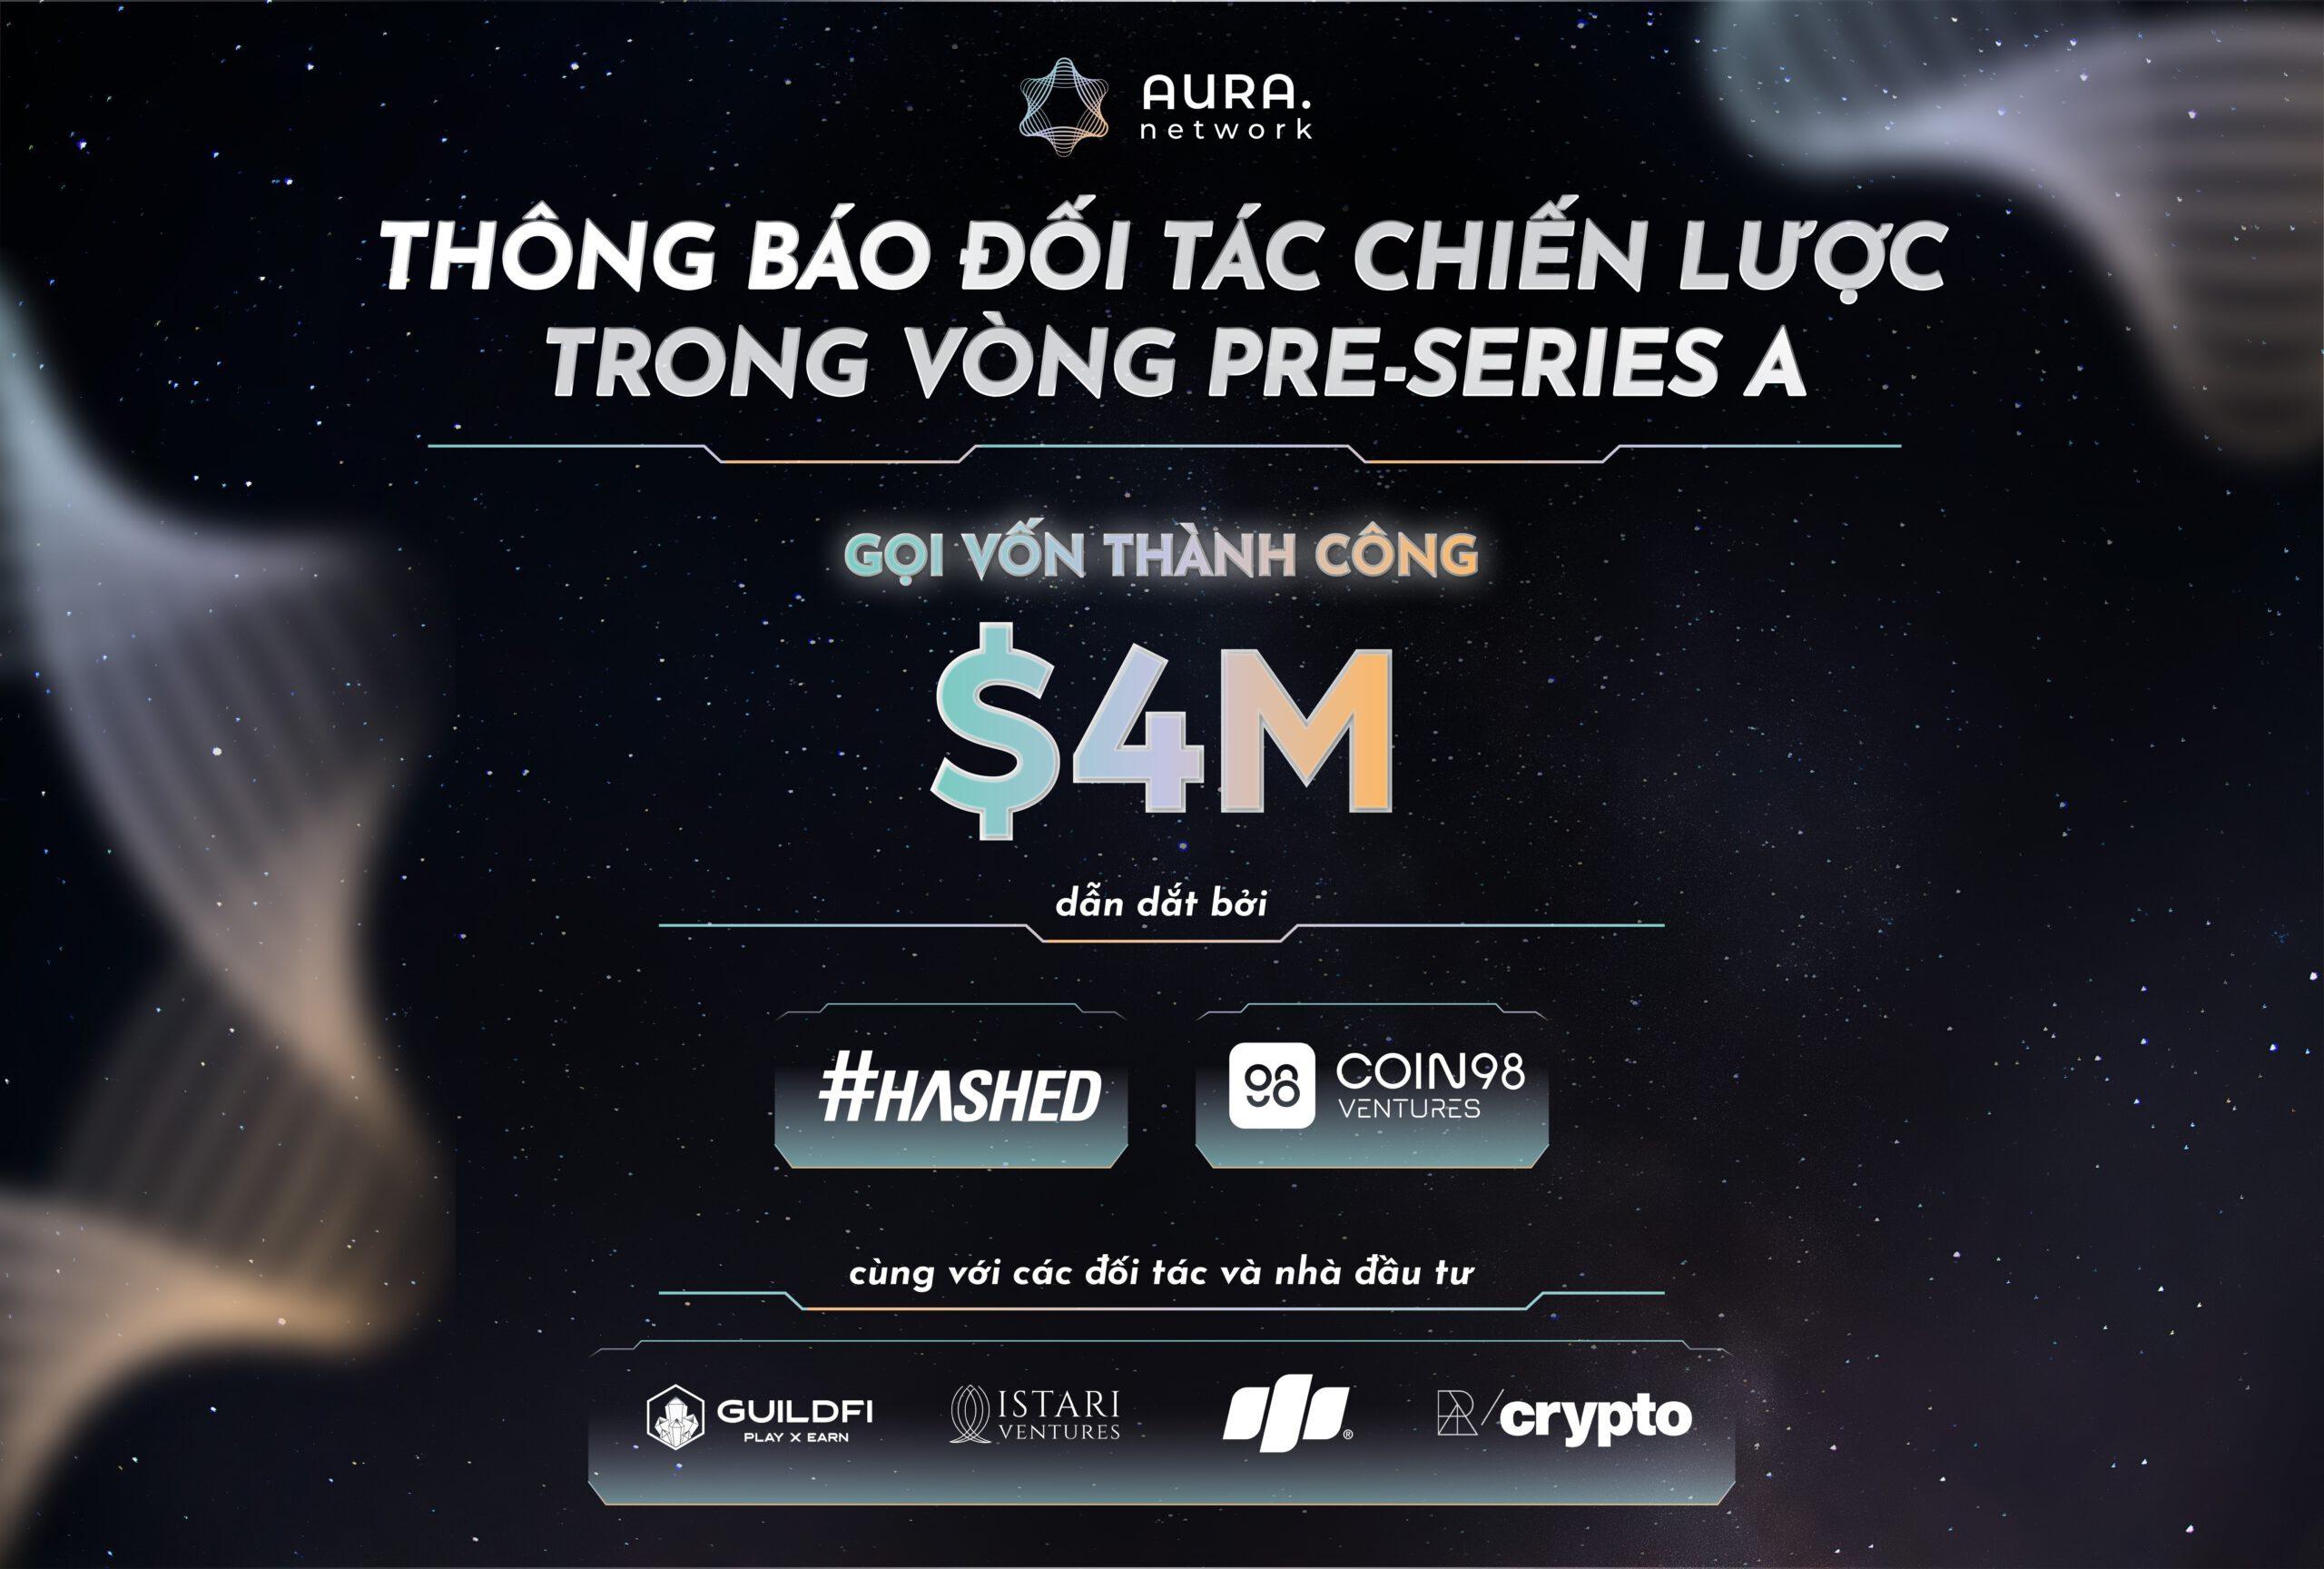 aura-network-goi-von-thanh-cong-4-trieu-usd-vong-pre-series-a